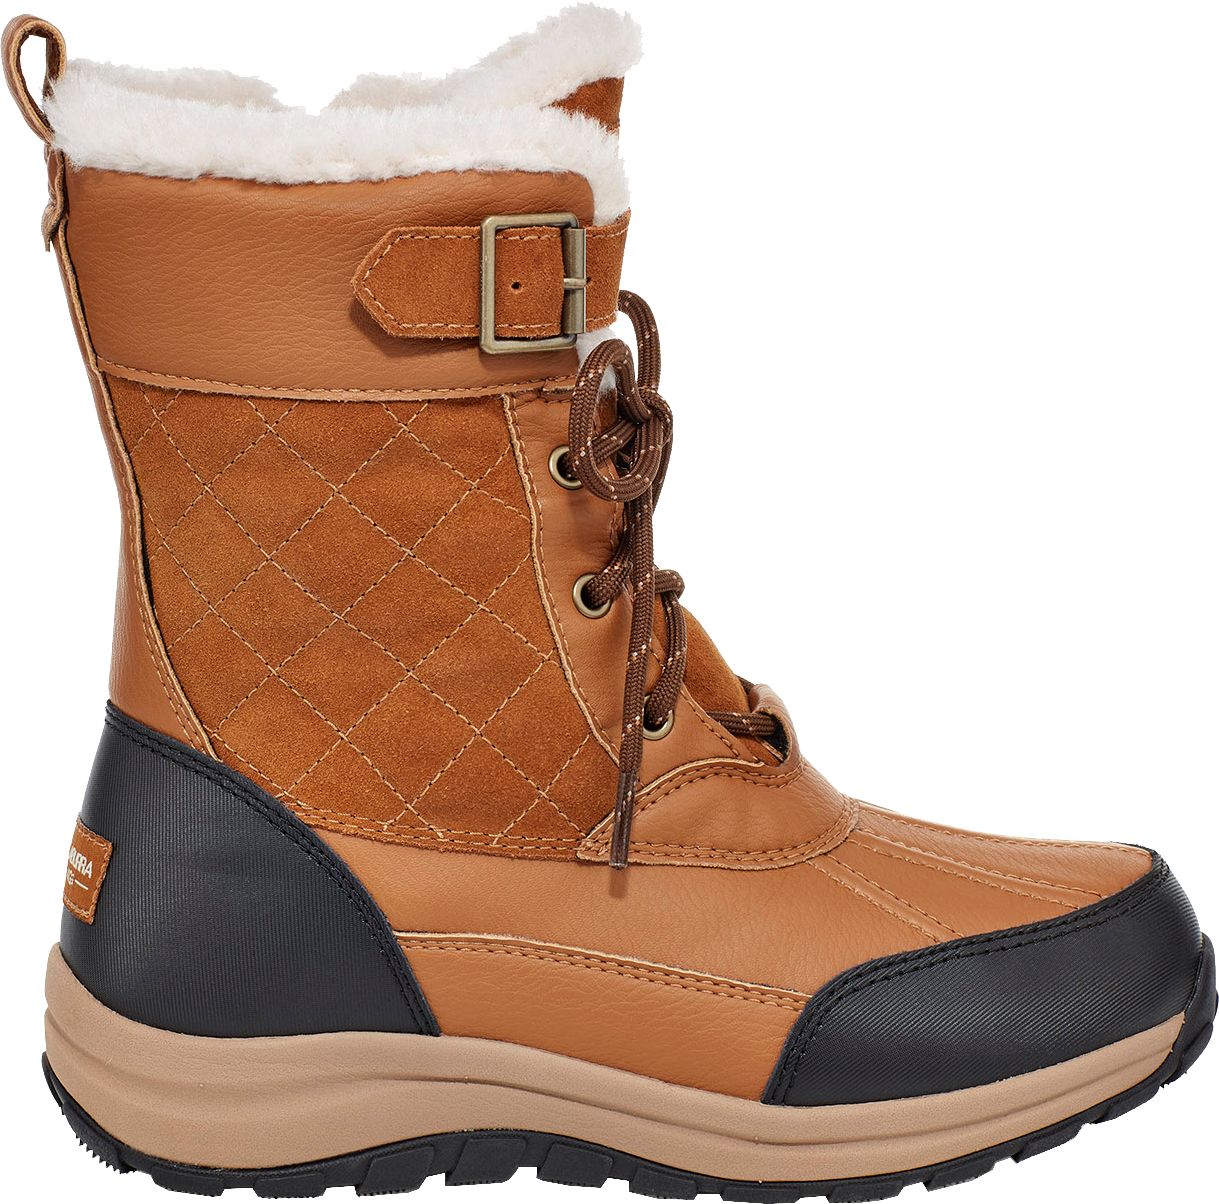 koolaburra boots